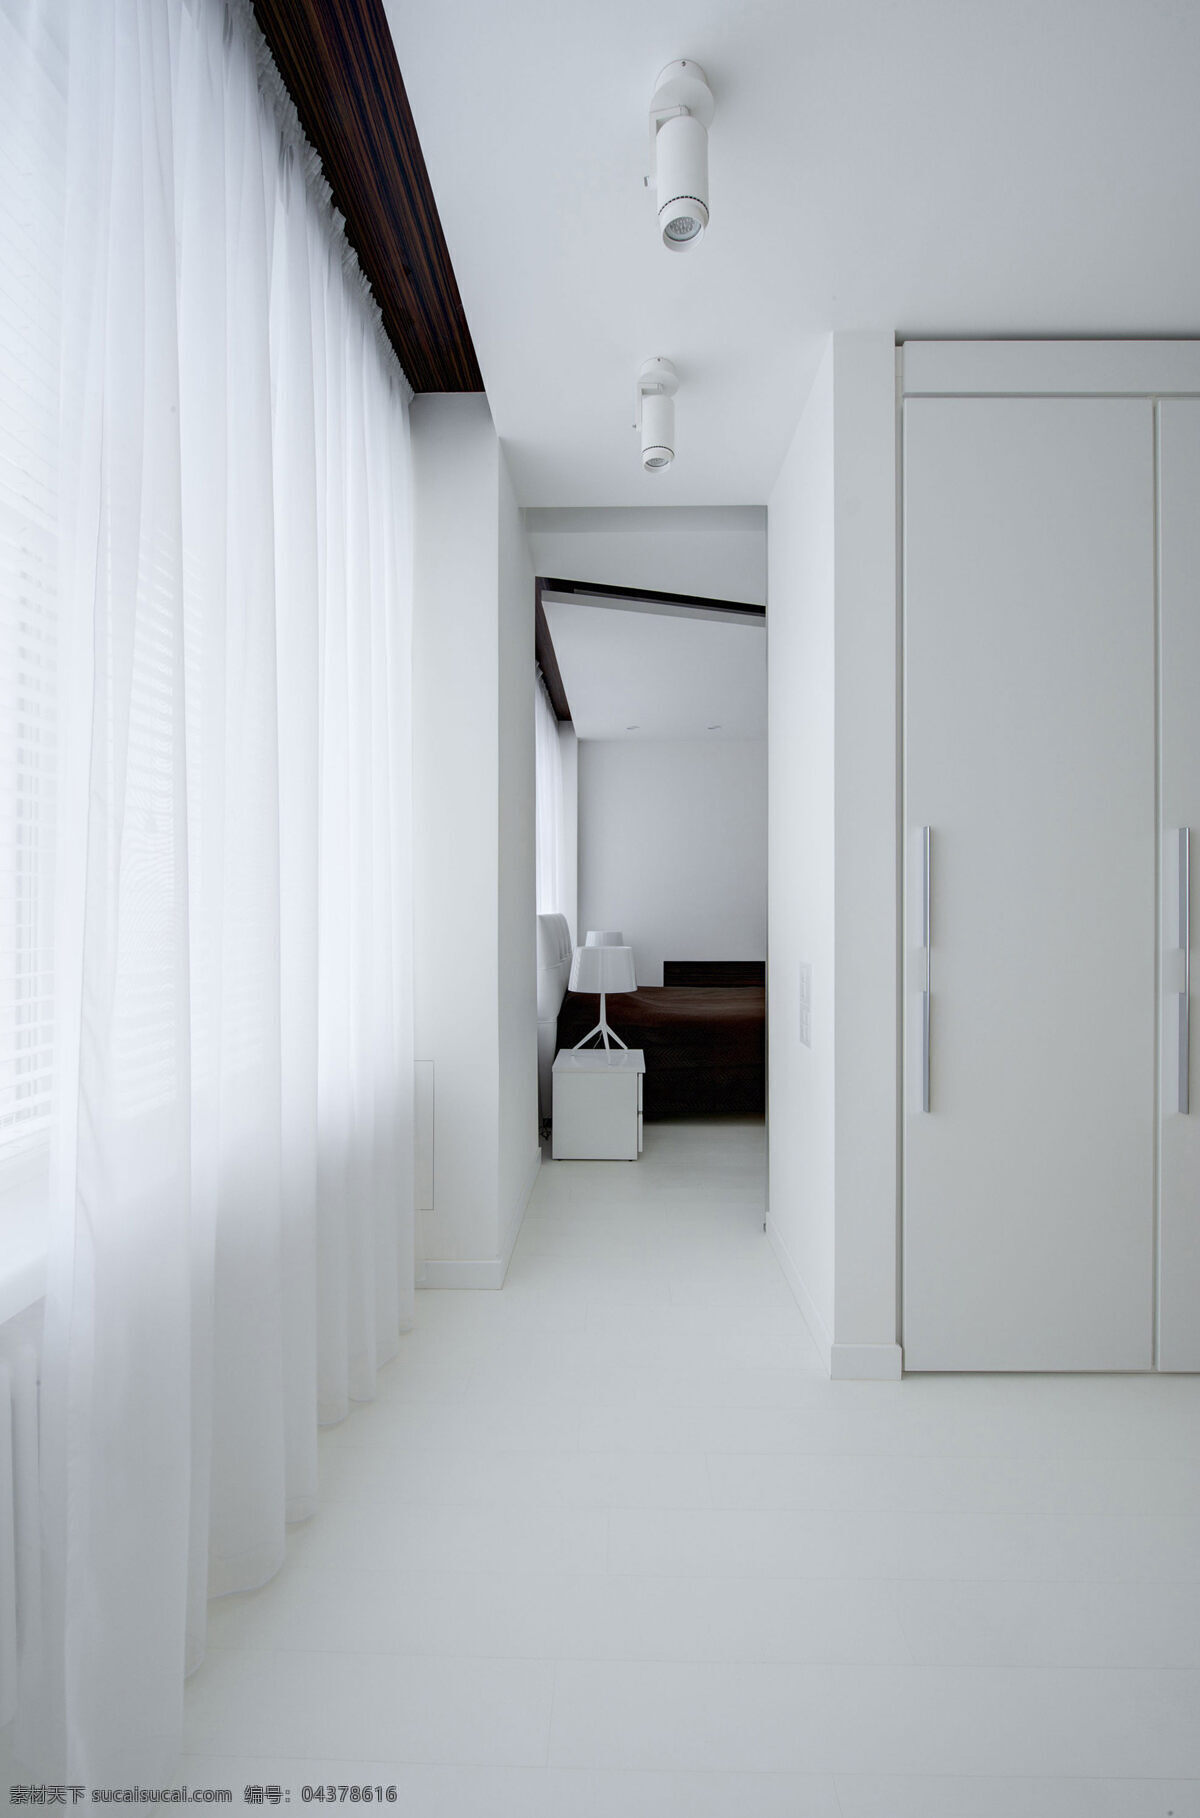 现代 极 简 卧室 白色 亮 衣柜 室内装修 效果图 客厅装修 白色地板 白色窗帘 白色衣柜